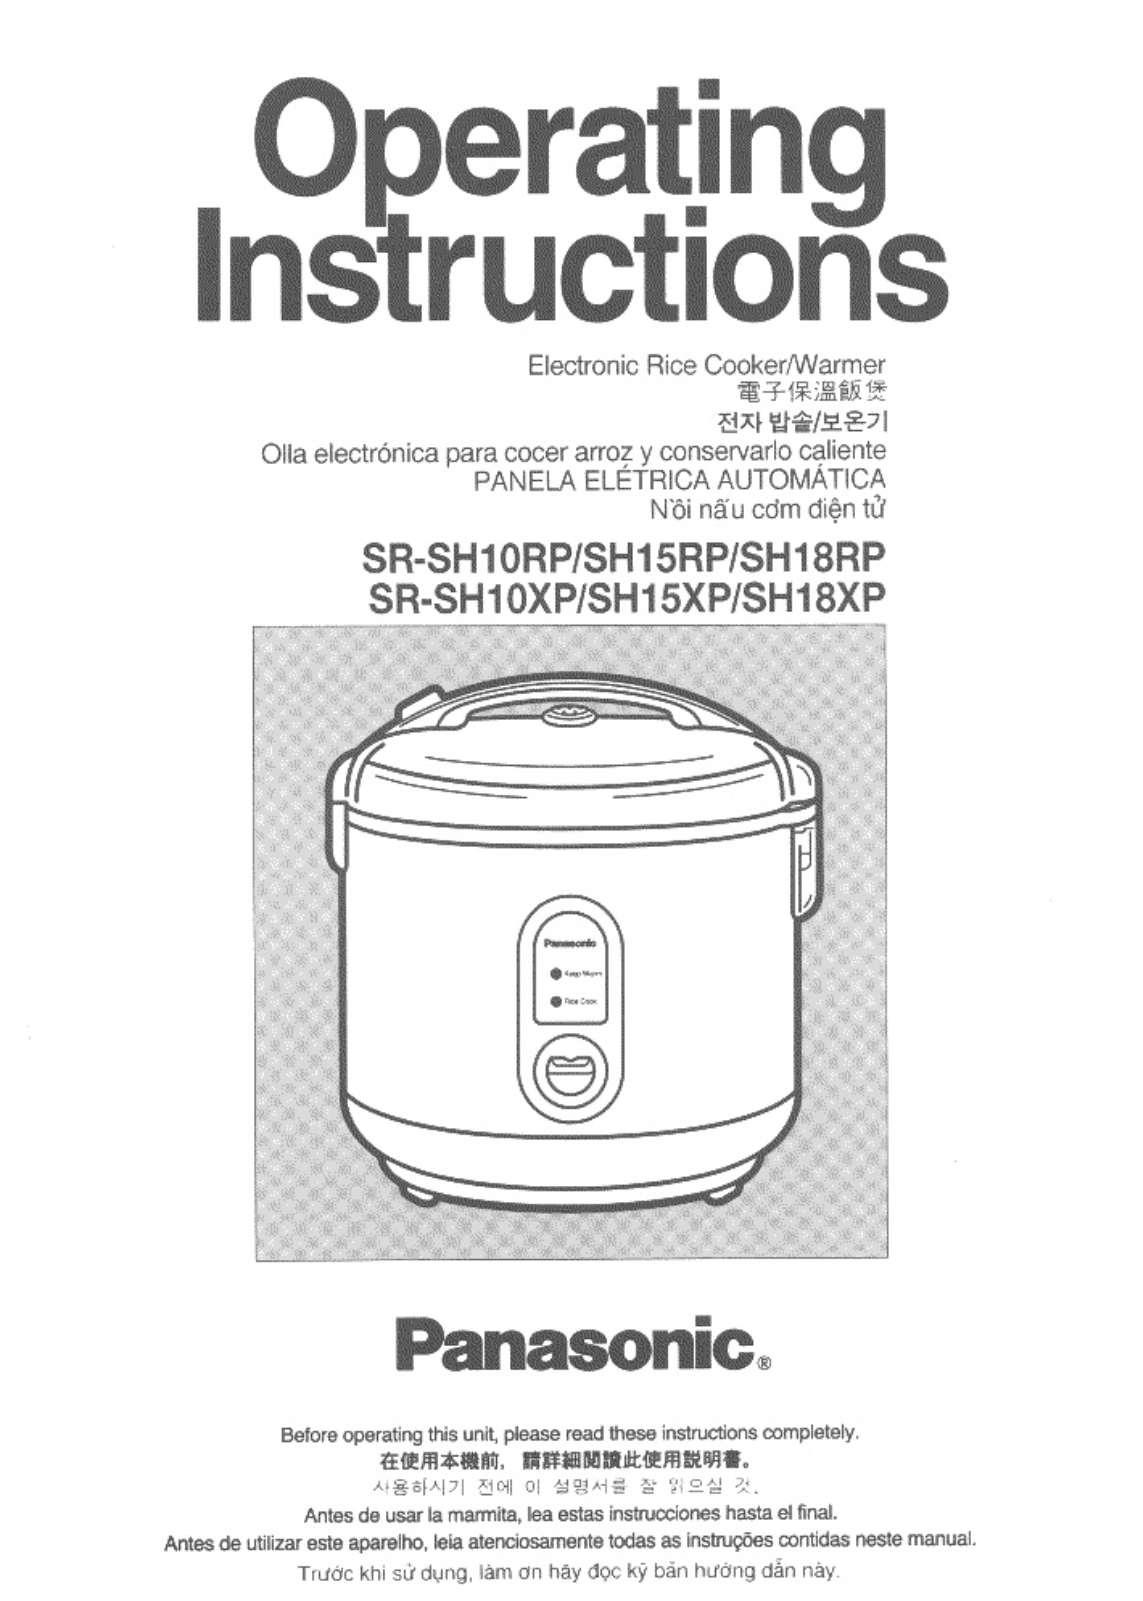 Panasonic Sr-sh10rp, Sr-sh15rp, Sr-sh18rp Owner's Manual